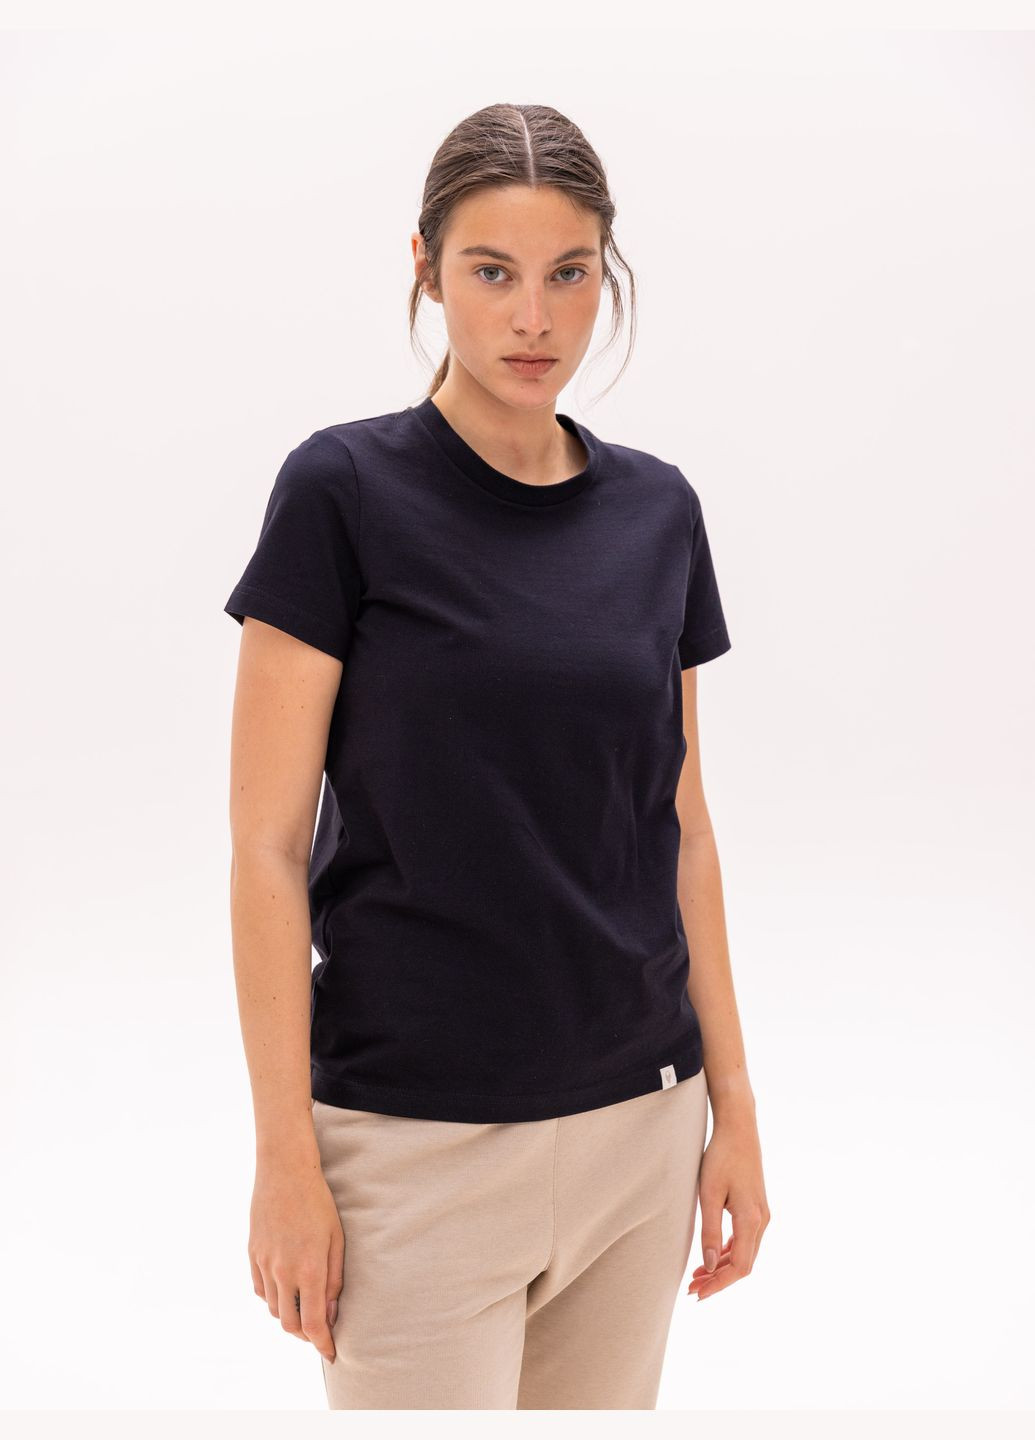 Чорна всесезон футболка базова жіноча з коротким рукавом Роза